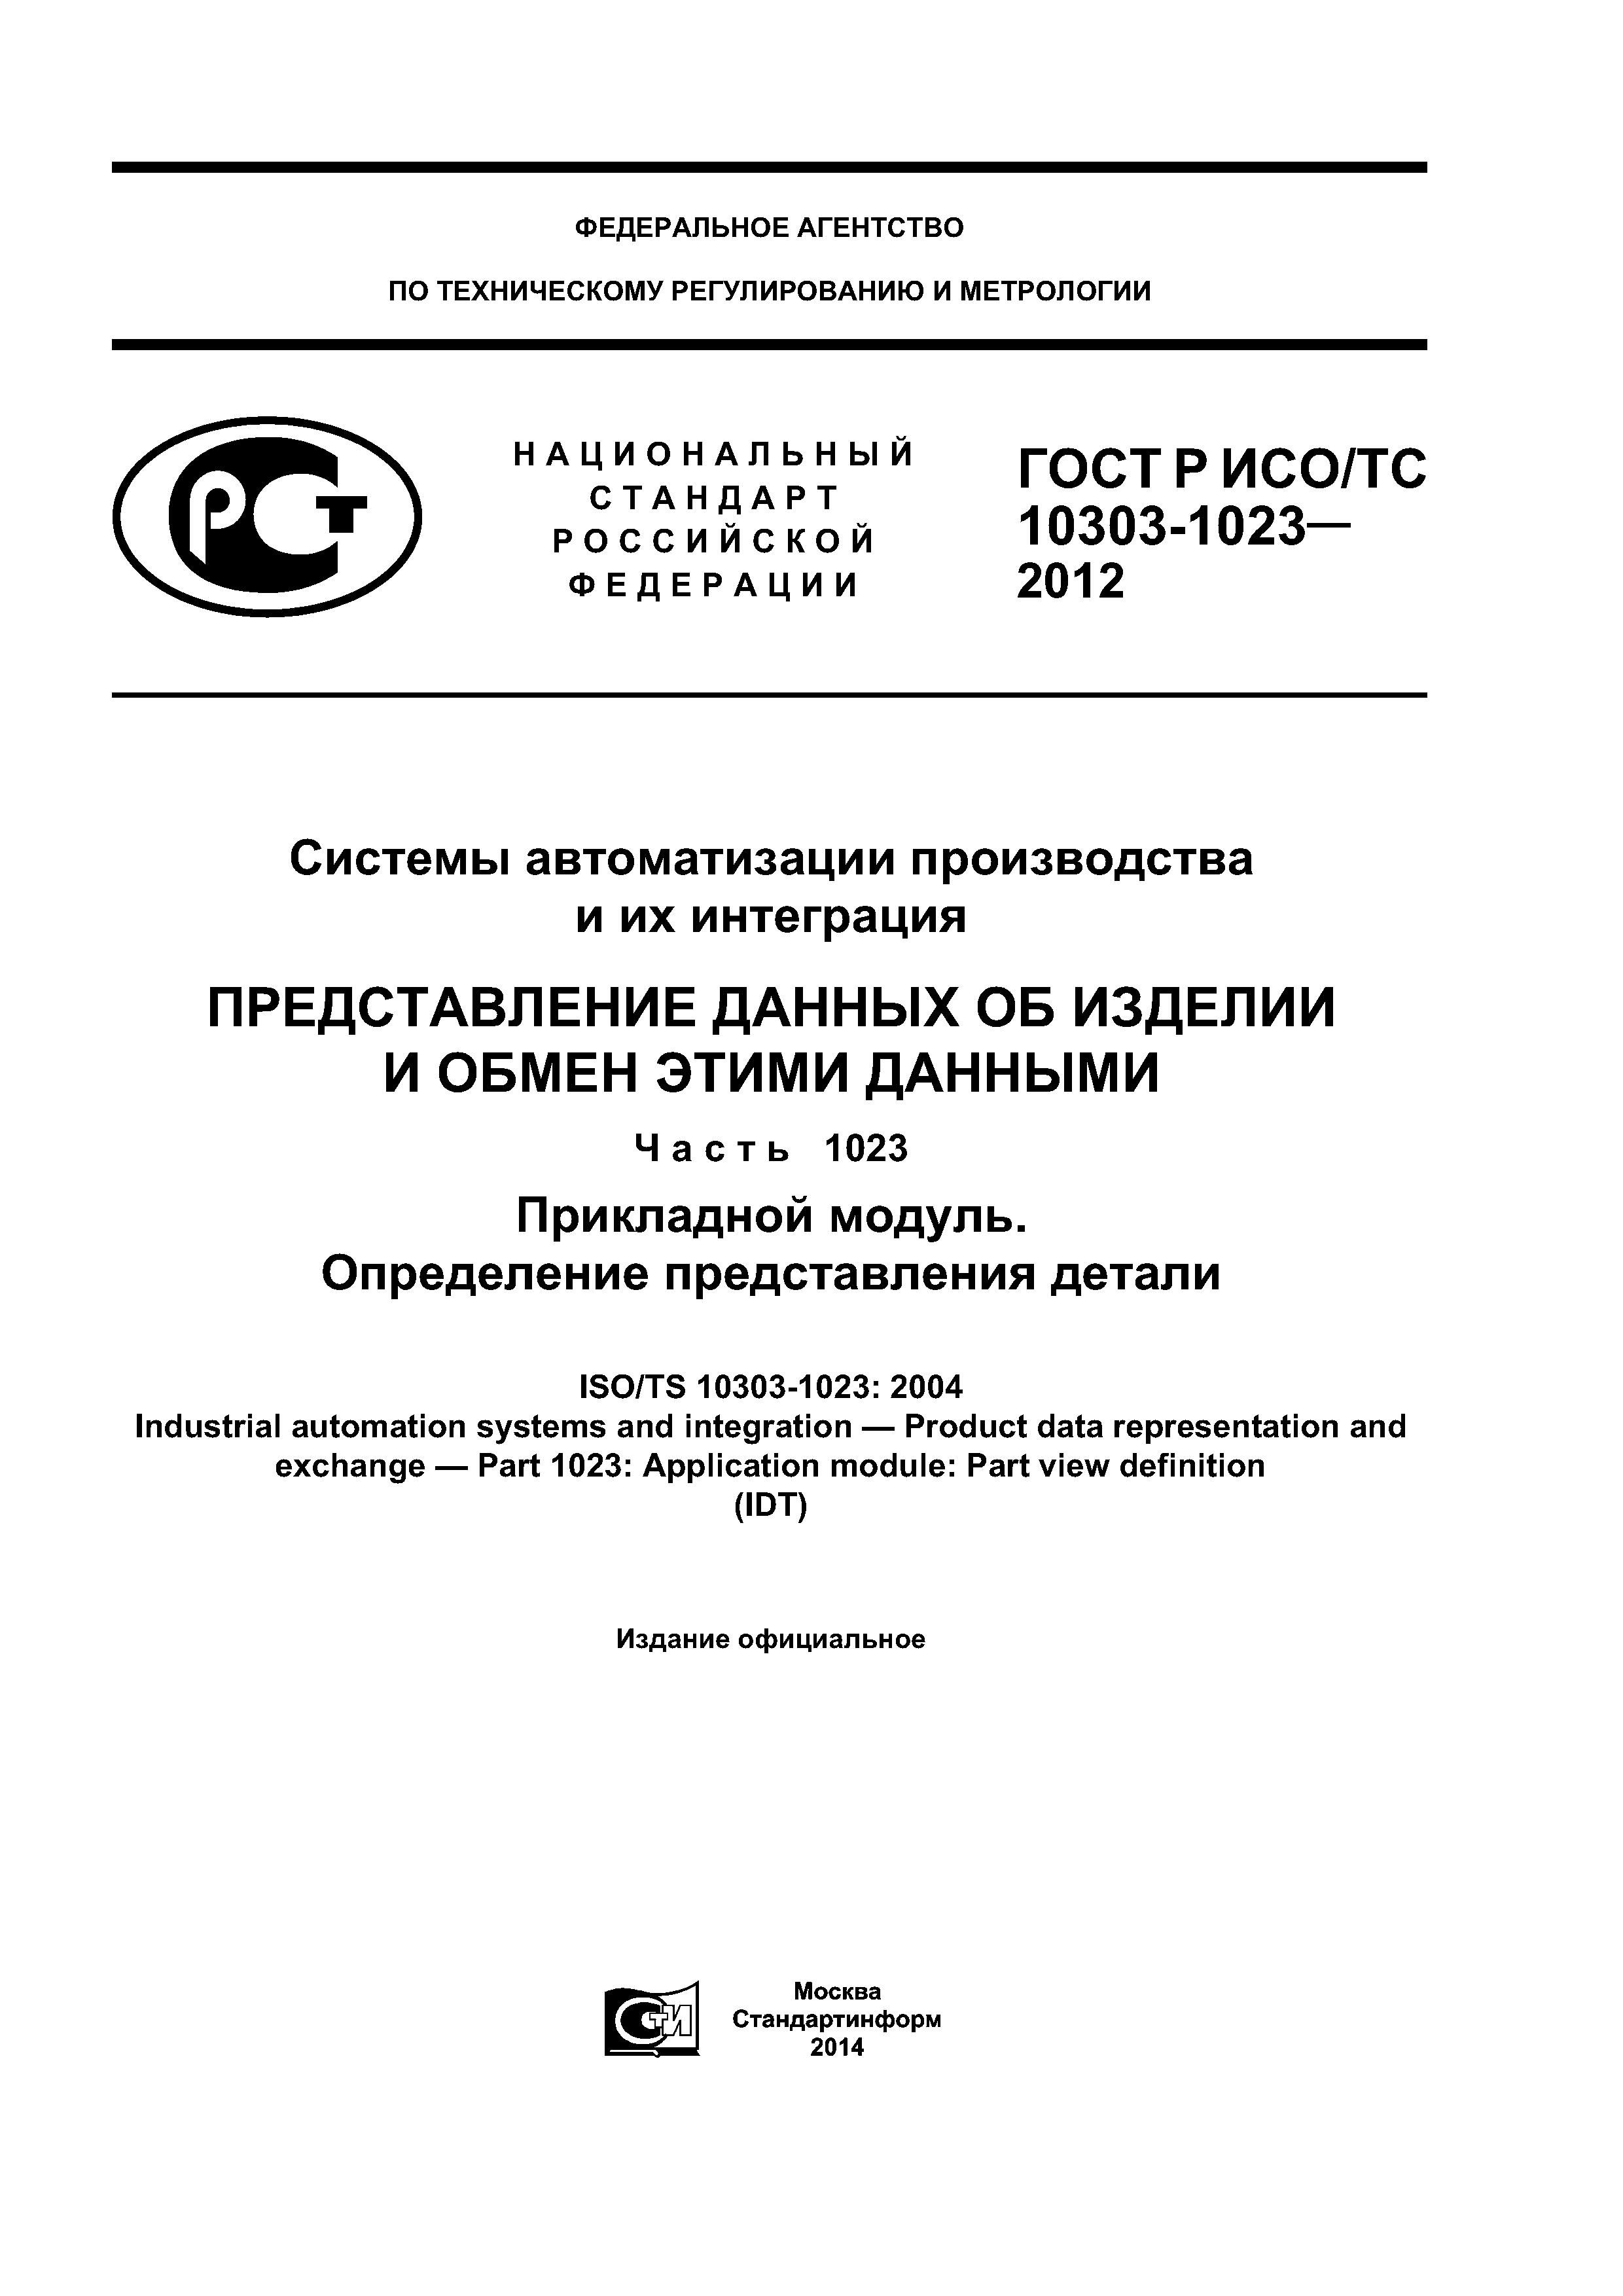 ГОСТ Р ИСО/ТС 10303-1023-2012